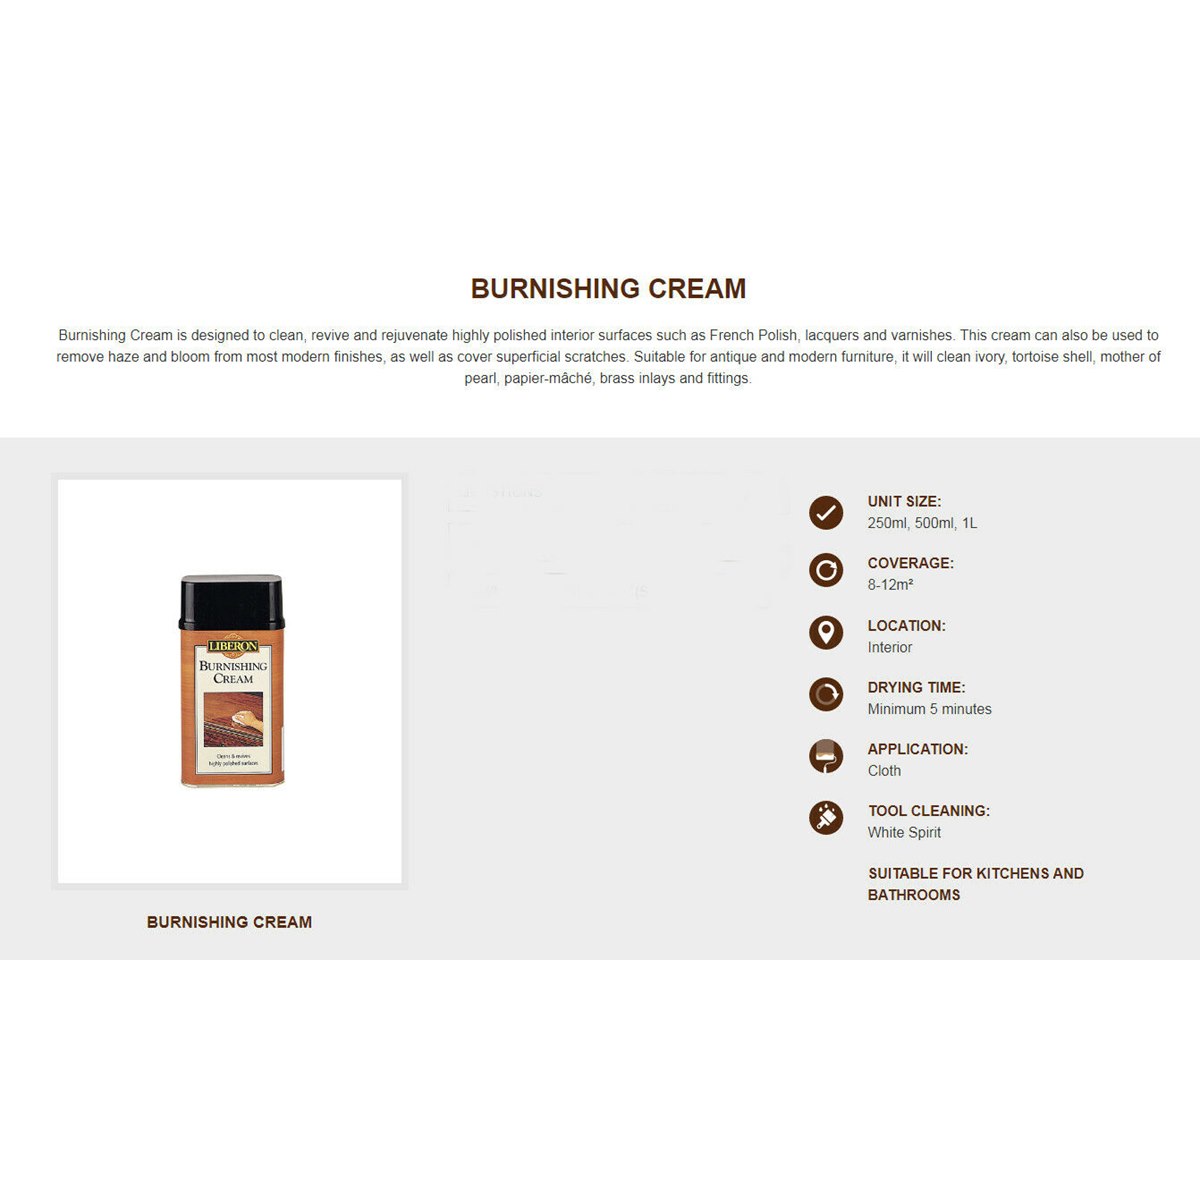 Where to Buy Liberon Burnishing Cream